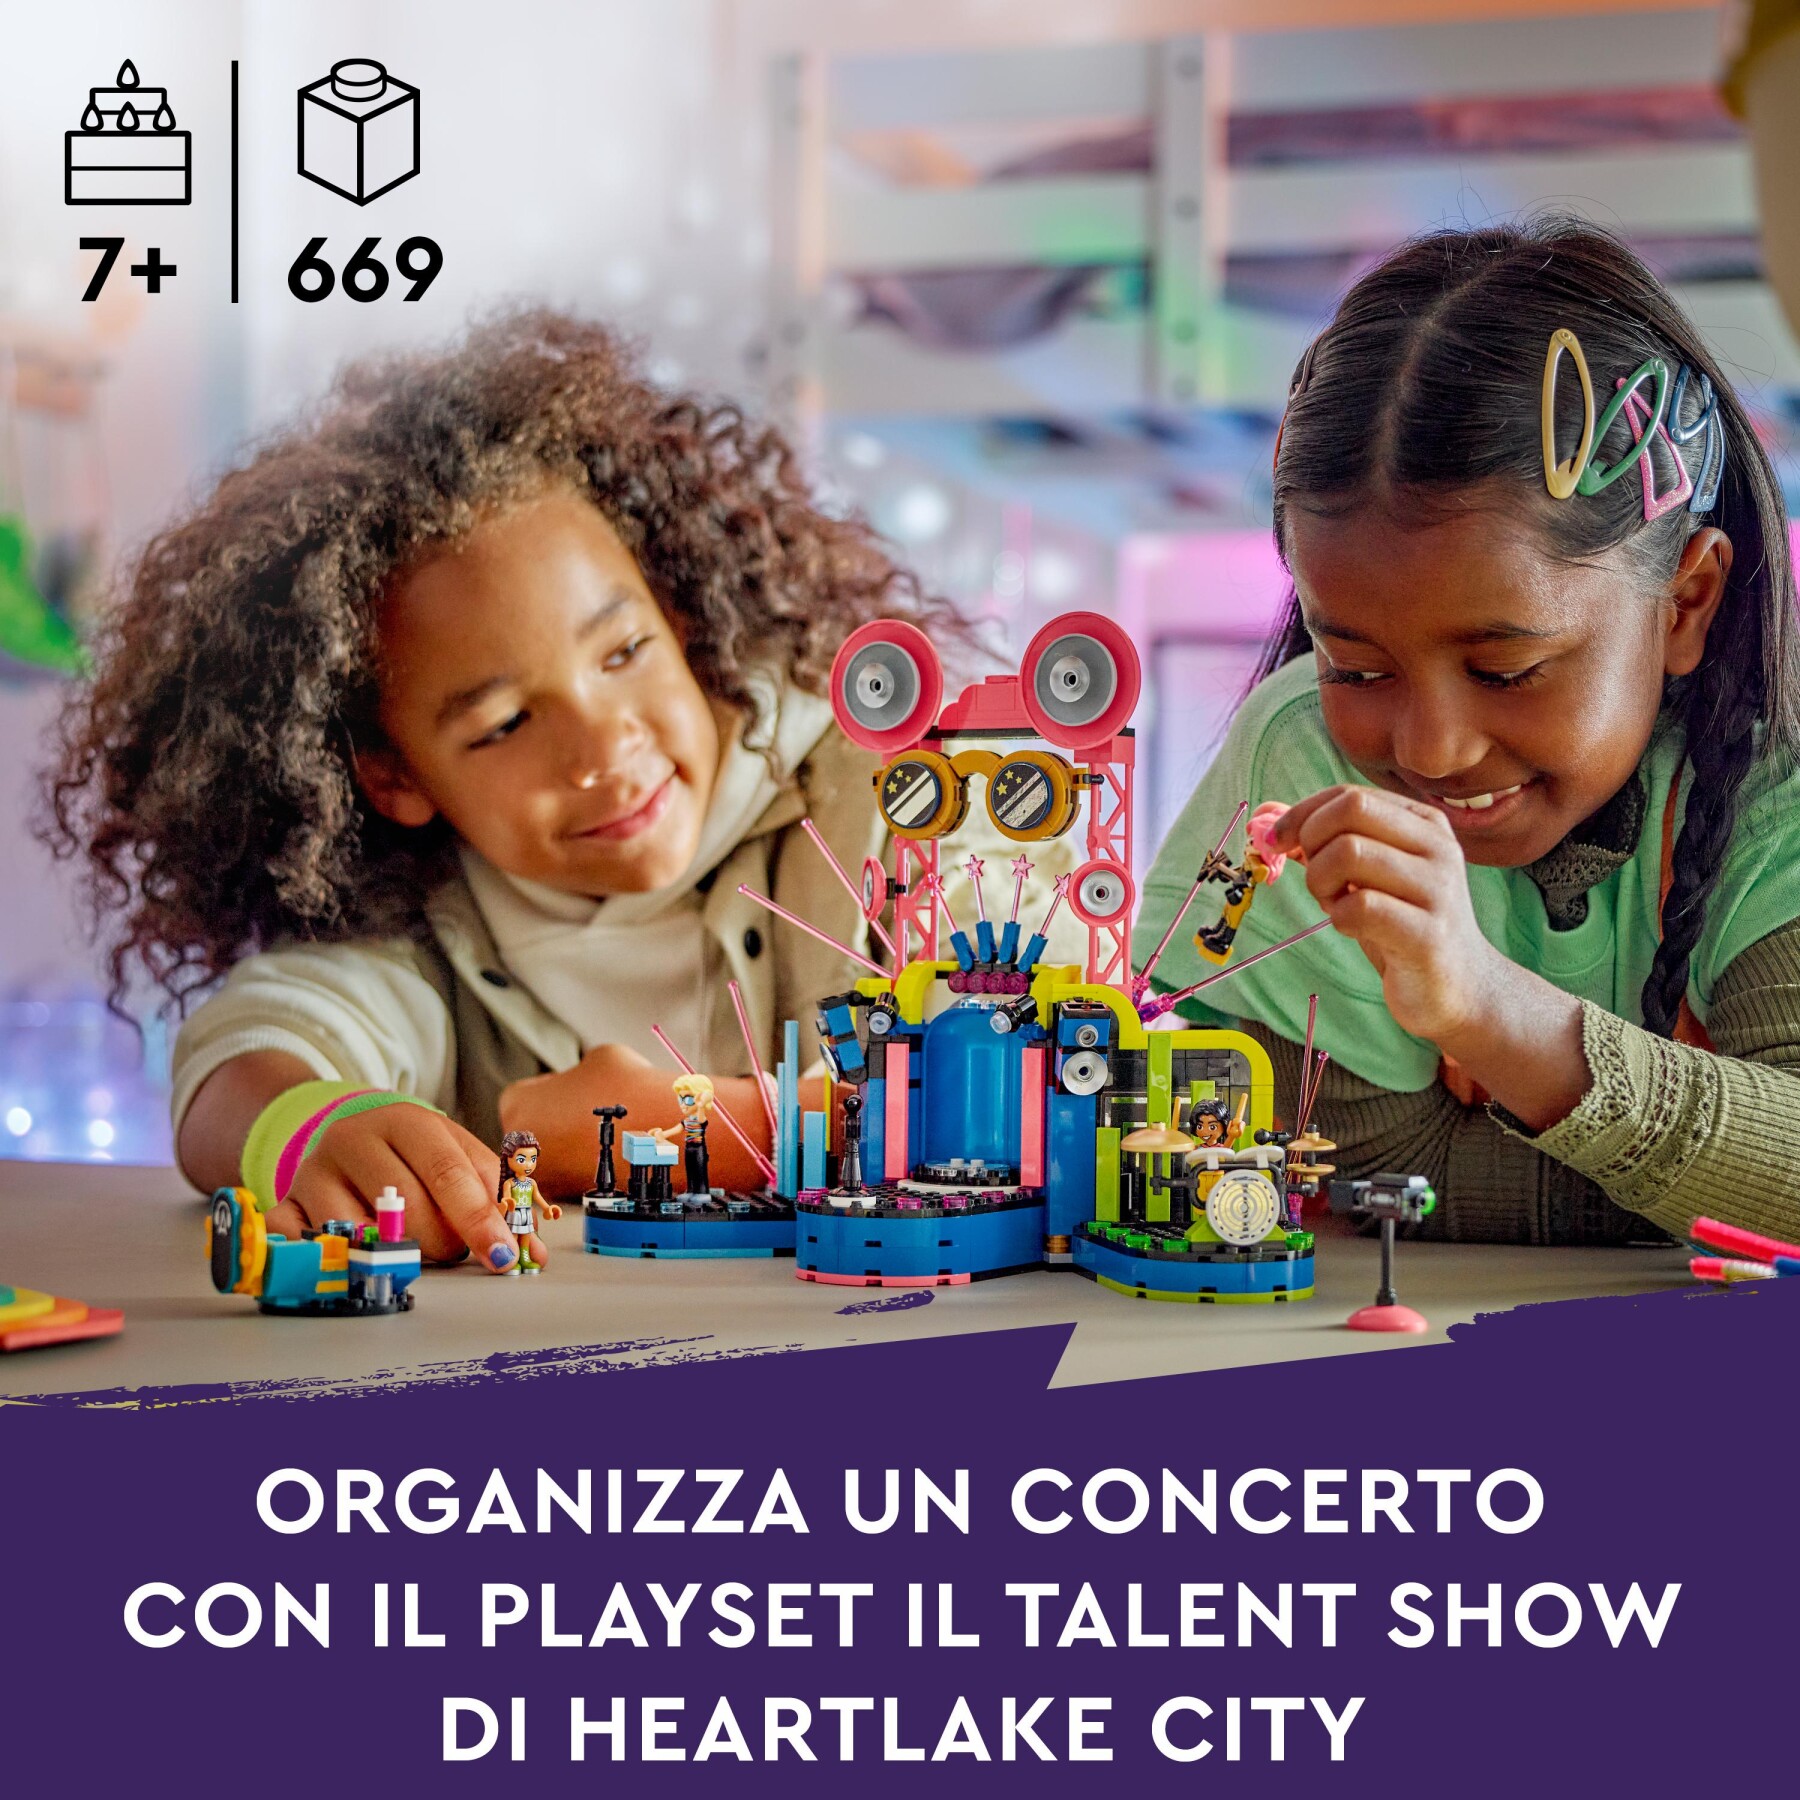 Lego friends 42616 il talent show di heartlake city, giochi musicali per bambini 7+ con 4 mini bamboline e palco giocattolo - LEGO FRIENDS